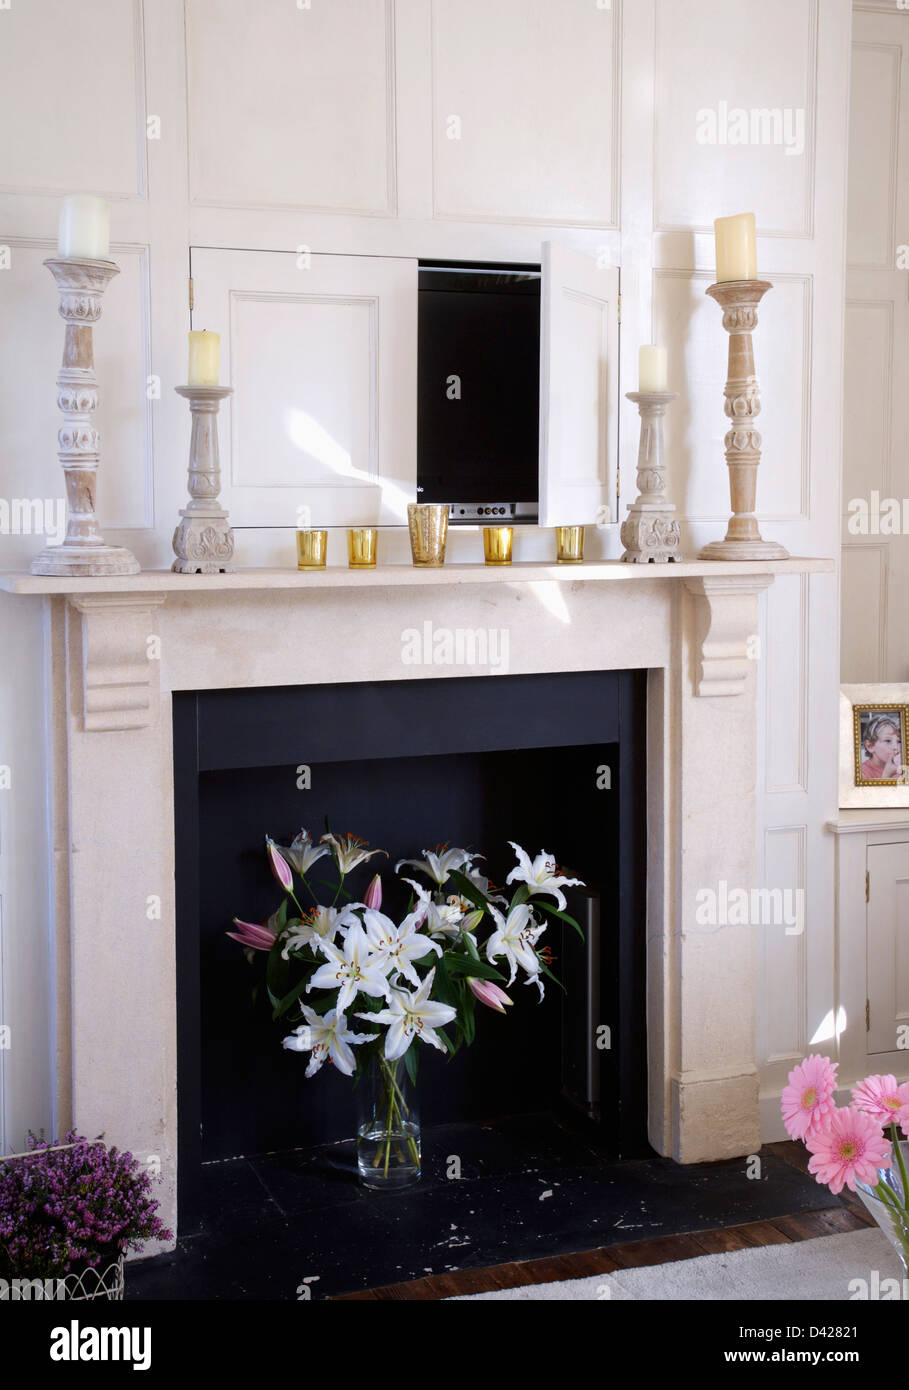 Porte ouverte à la télévision dissimulé dans des bois au-dessus de cheminée en marbre avec vase de lys blancs dans la grille Banque D'Images